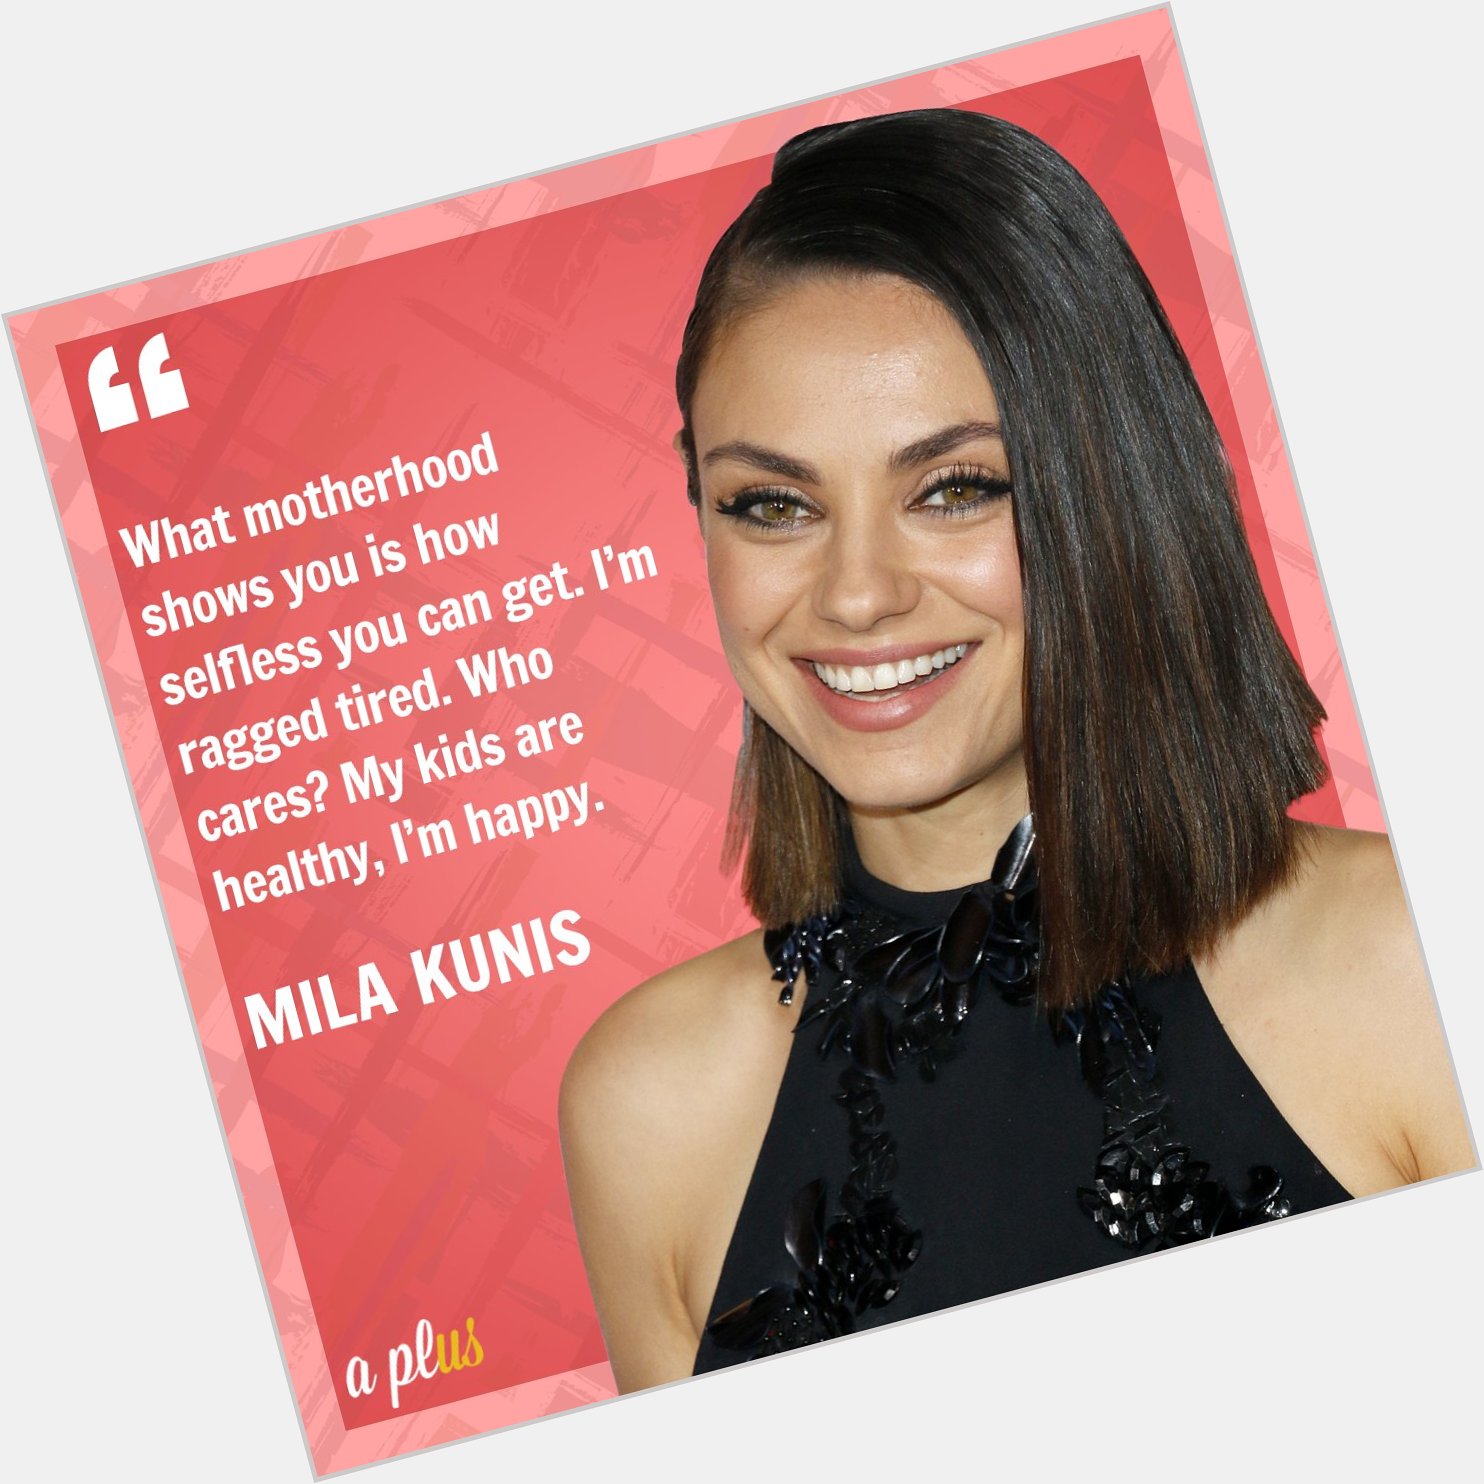 Happy birthday Mila Kunis! 